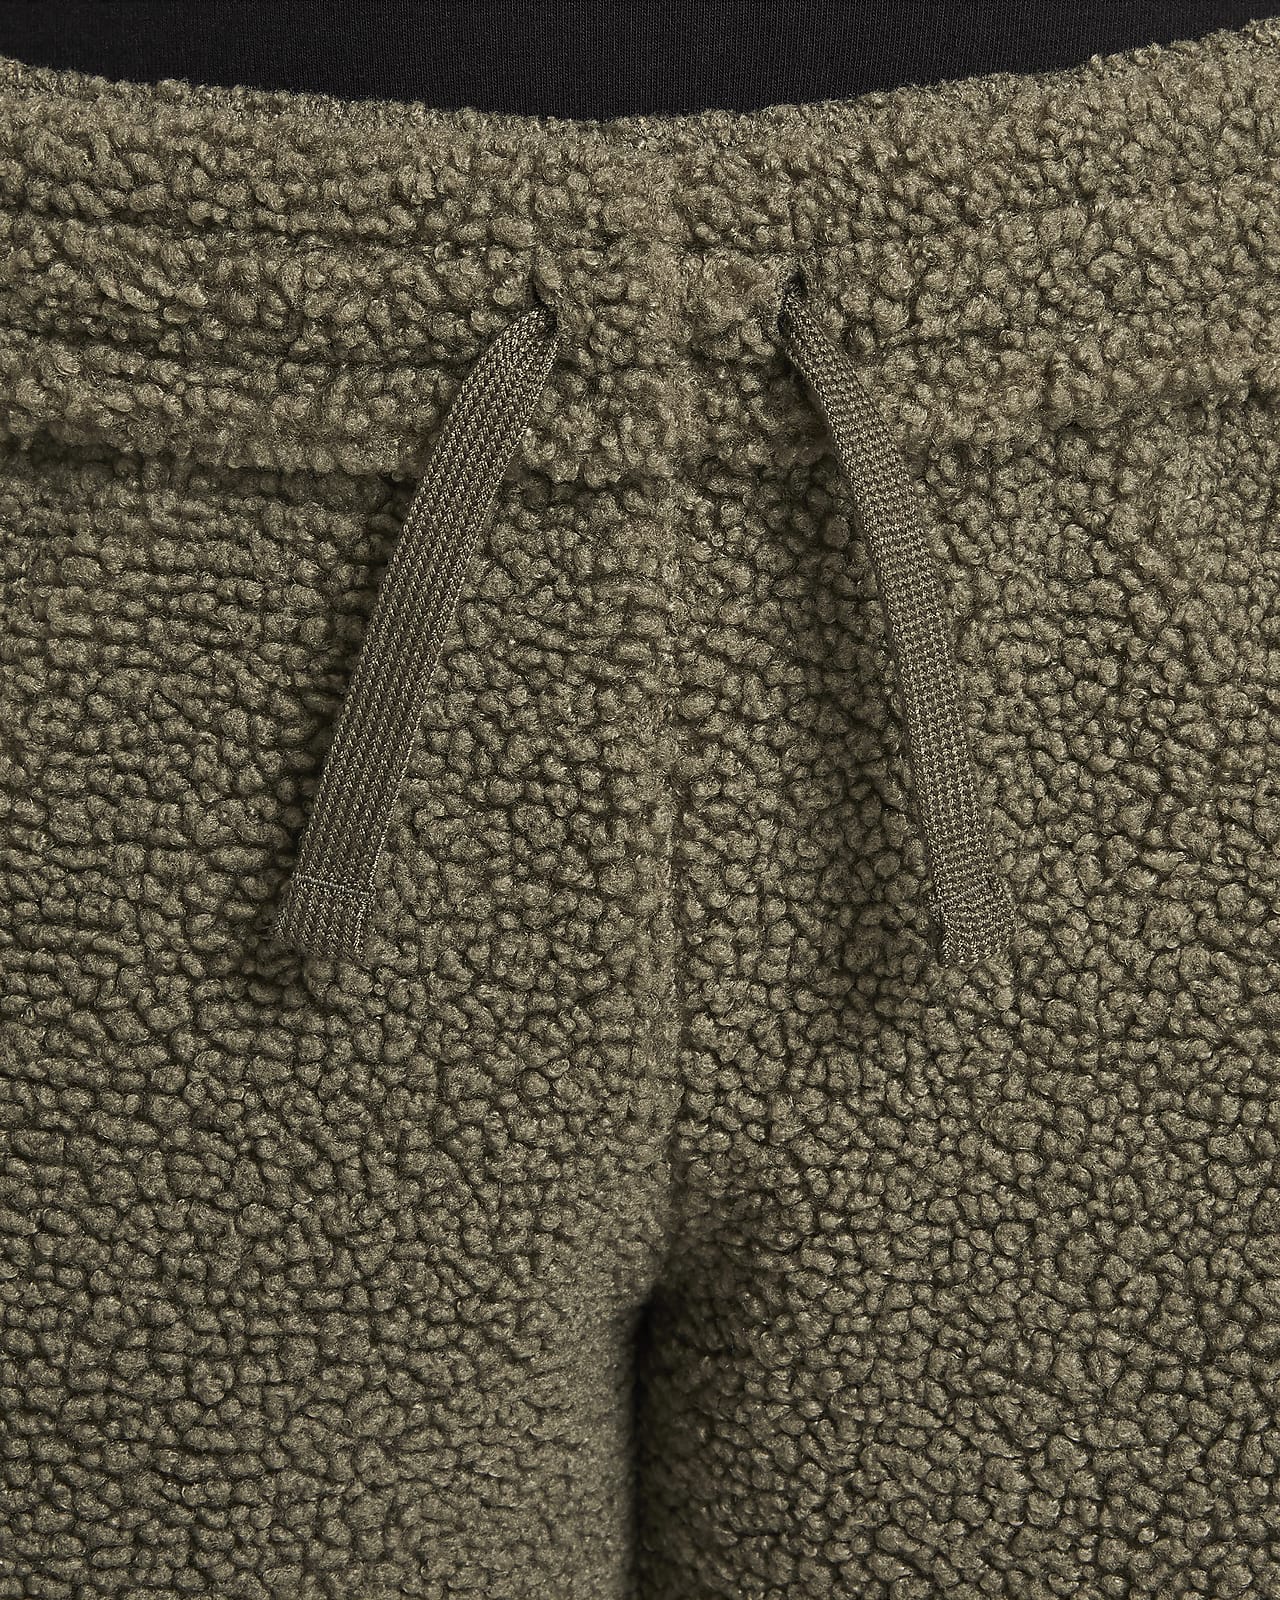 Nike Sportswear Club Fleece Big Kids' Winterized Pants.